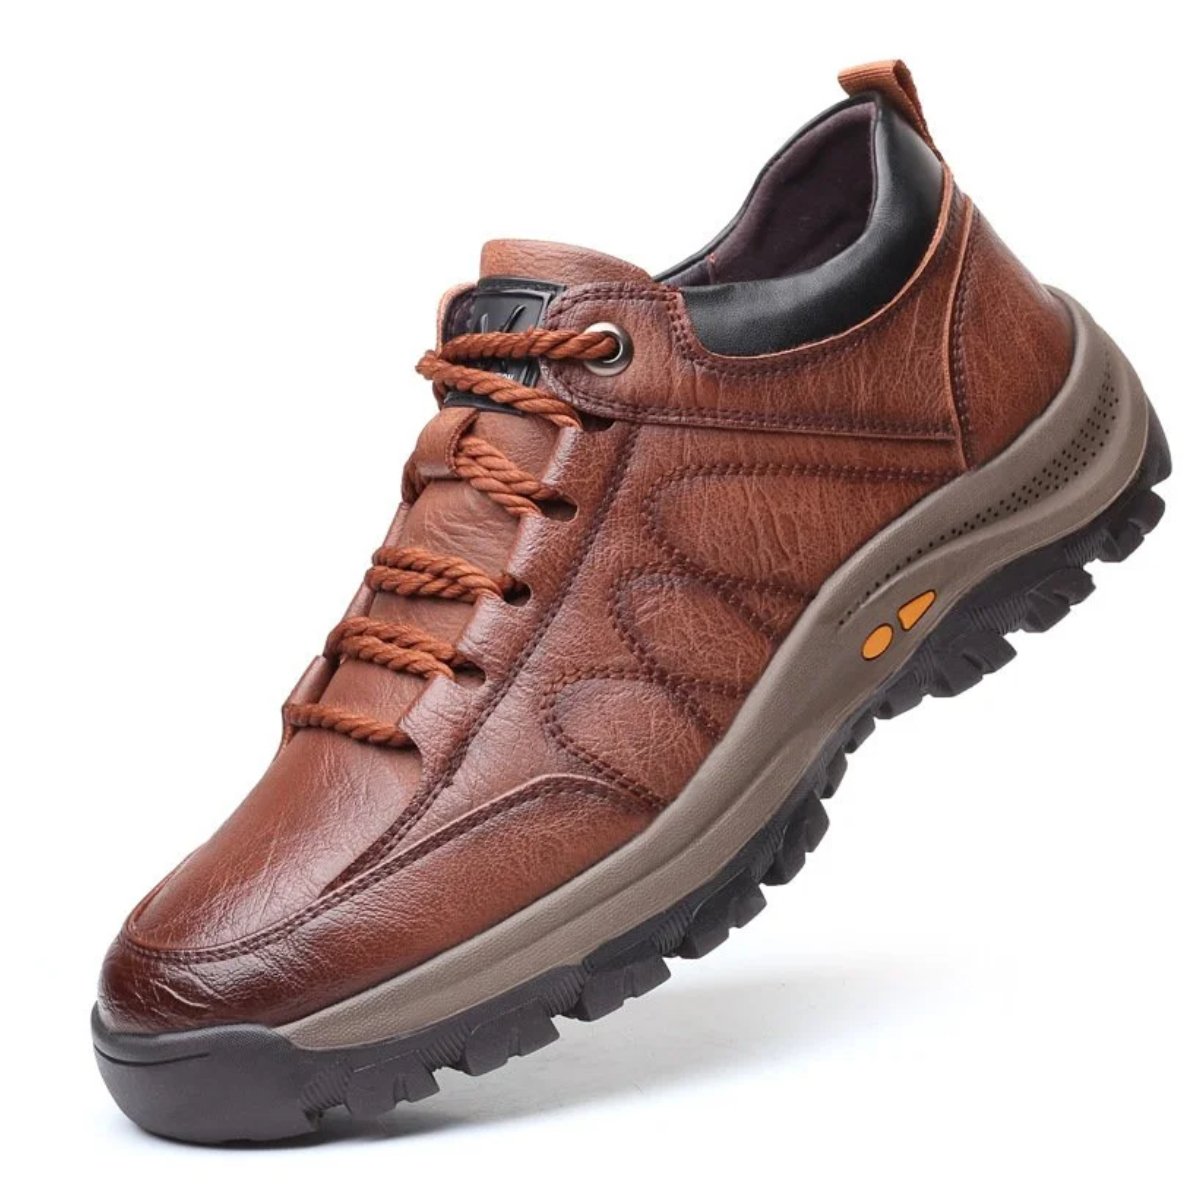 Sapatos de couro para homem : Elegância funcional - Innovoda